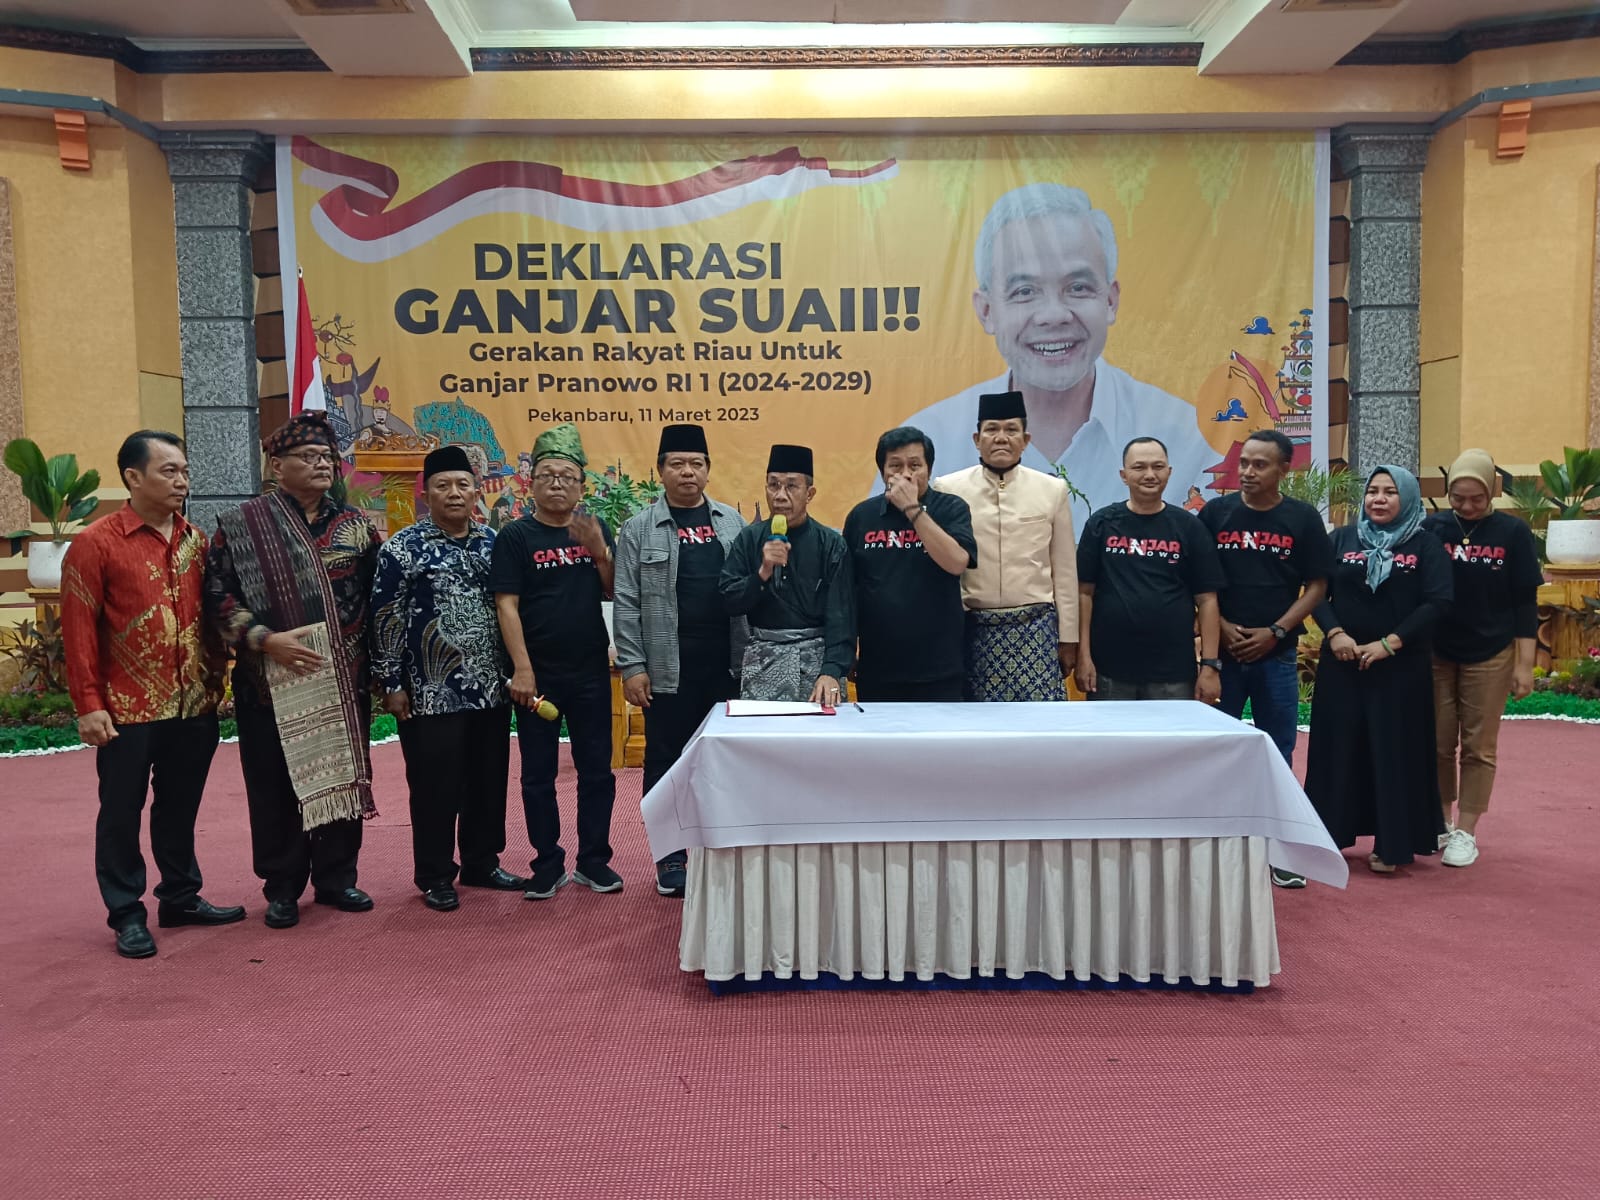 Multi Etnis dan Lintas Golongan di Riau Deklarasikan Ganjar Suai,